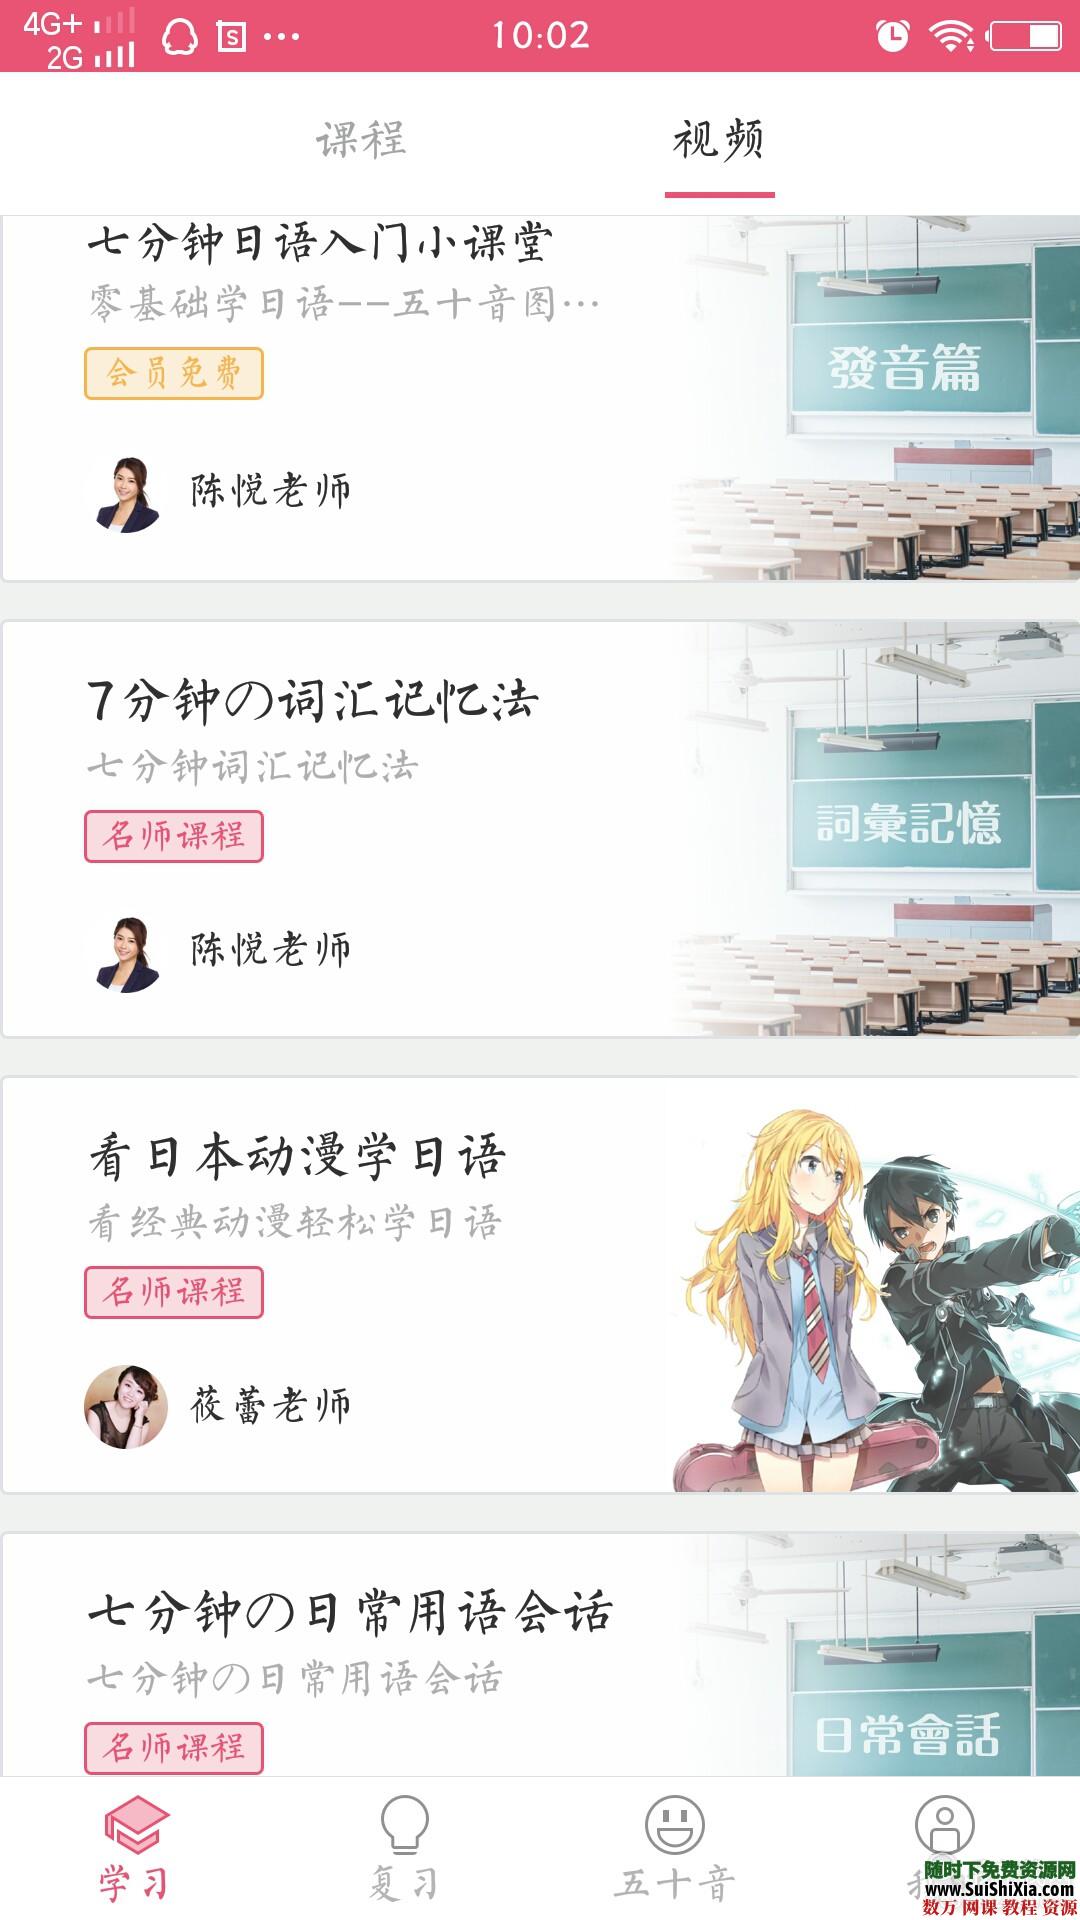 日语50音秒会 绝对专业 神器app 这是什么神仙app呀 升级打怪式学习 第4张